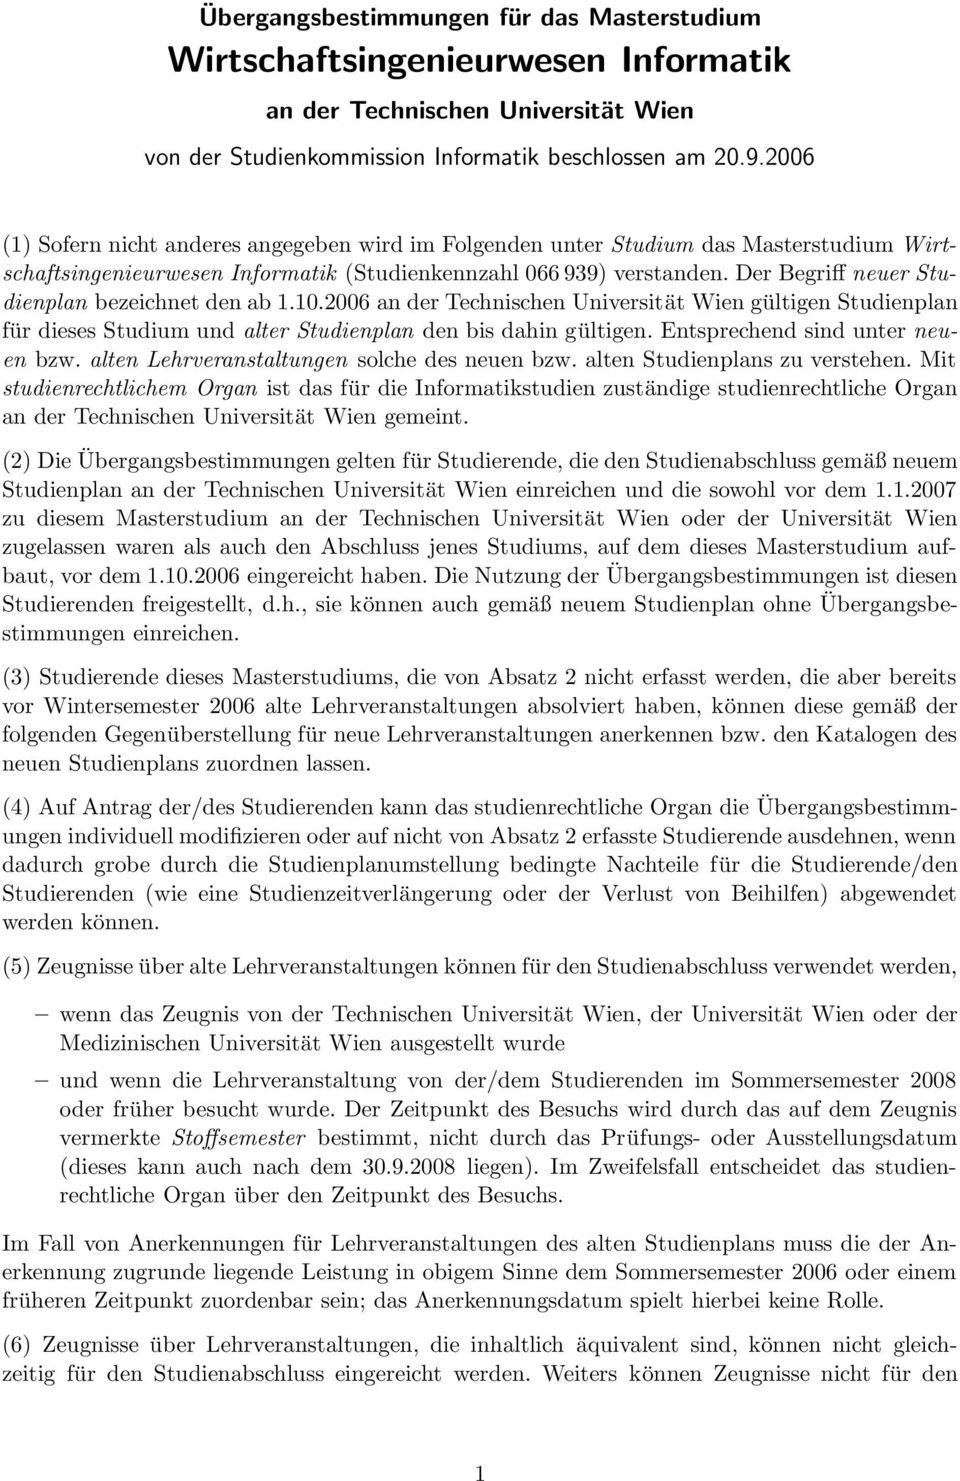 Der Begriff neuer Studienplan bezeichnet den ab 1.10.2006 an der Technischen Universität Wien gültigen Studienplan für dieses Studium und alter Studienplan den bis dahin gültigen.